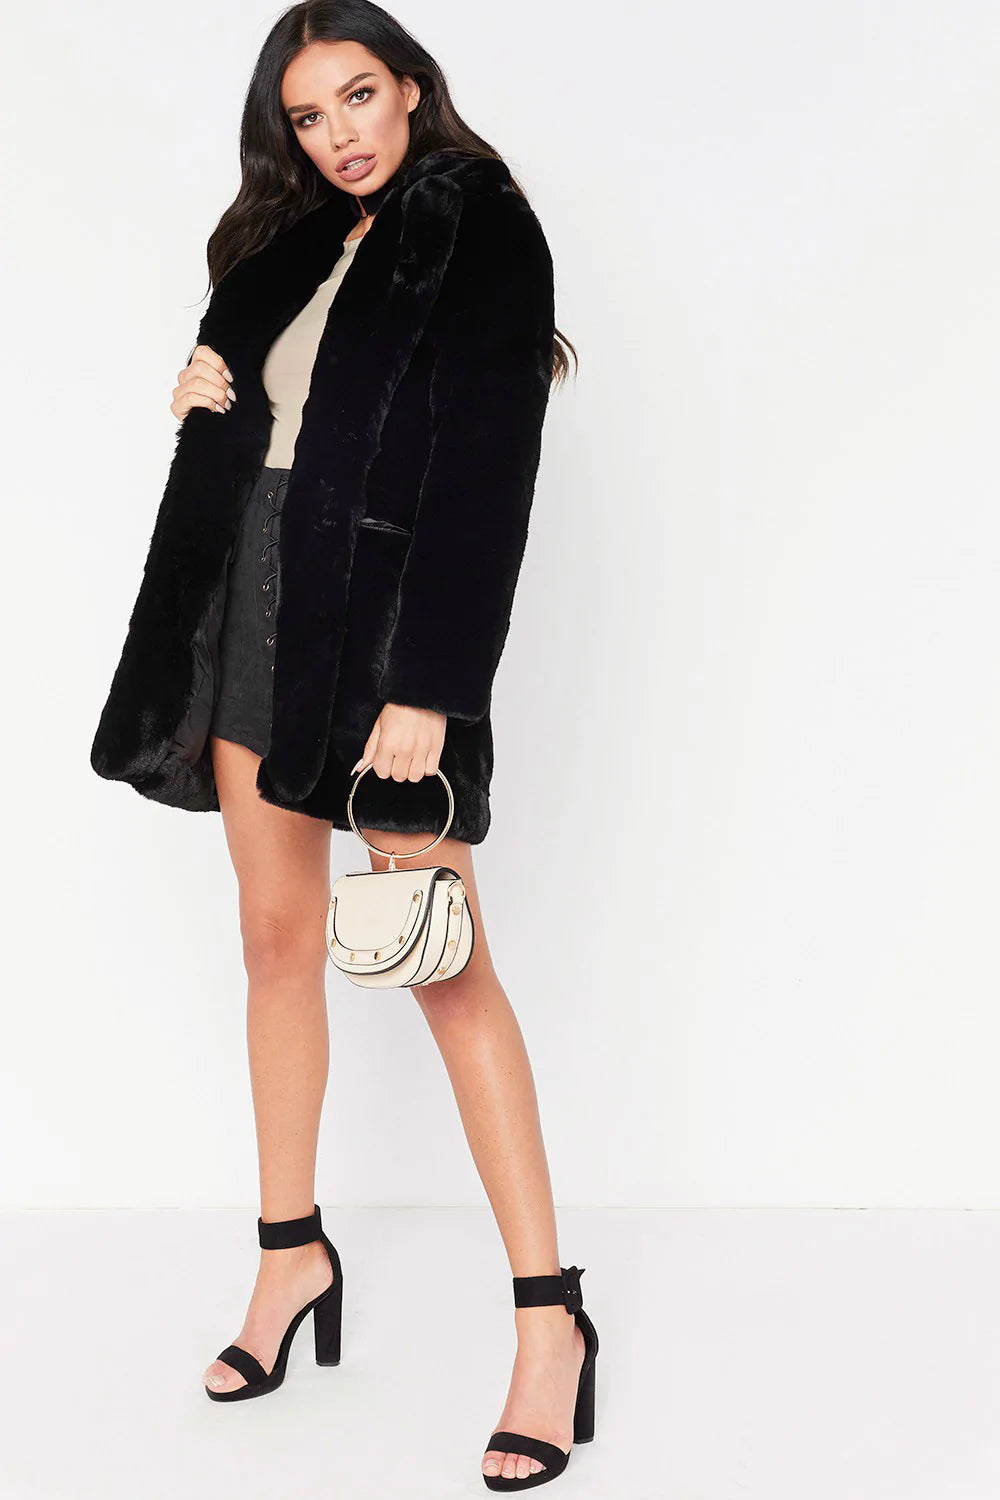 Faux Fur Coat Women Long Sleeve Warm Thick Wave Plus Size Coat Winter Autumn